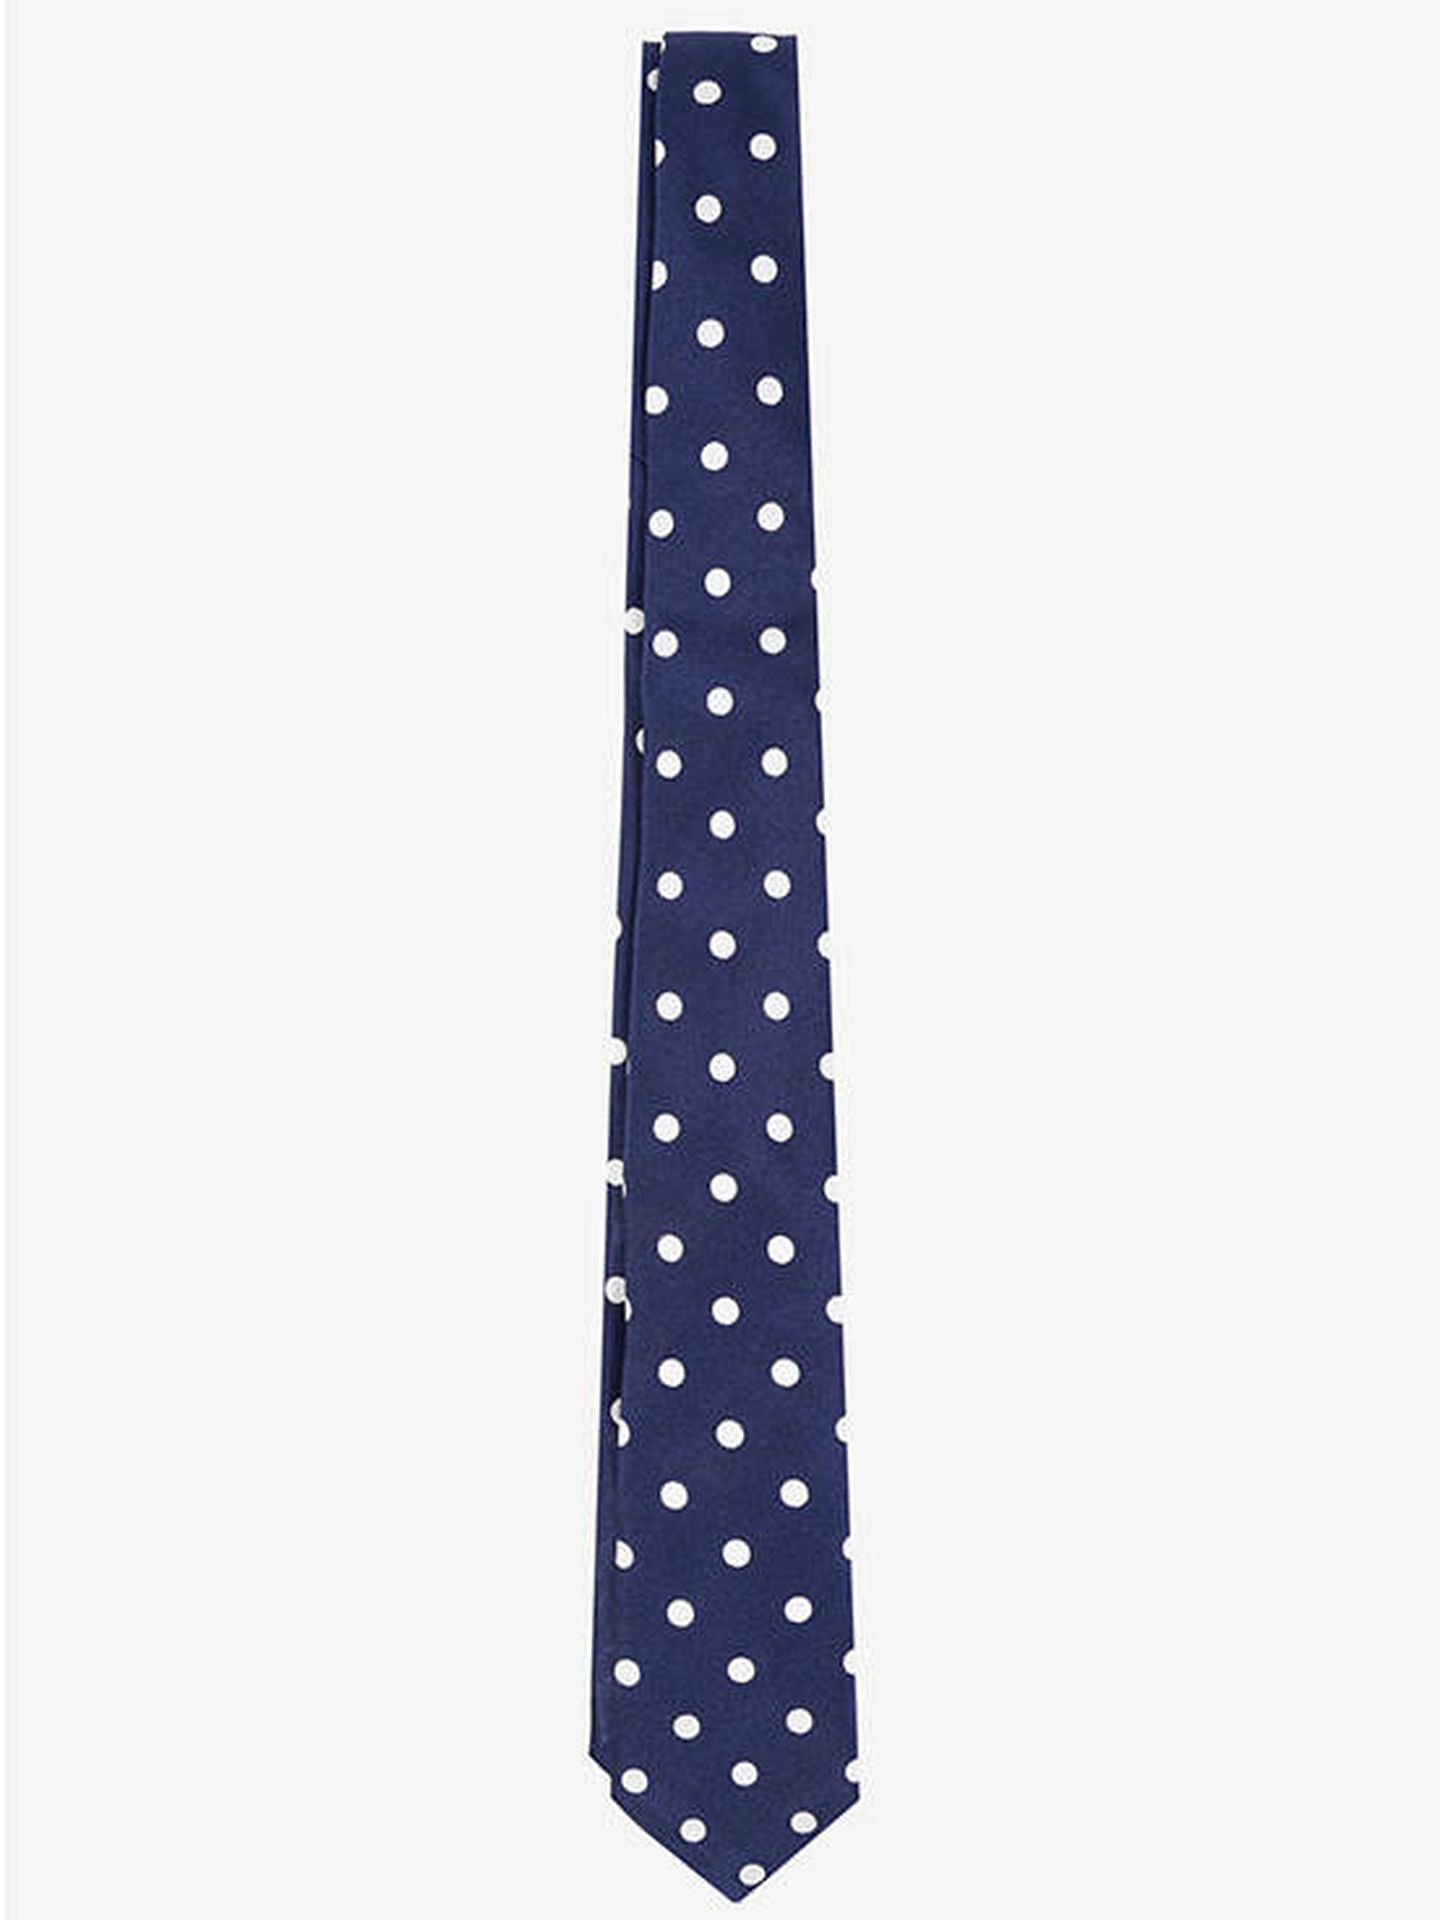 Estas son las corbatas que vas a regalarle a tu padre en su día